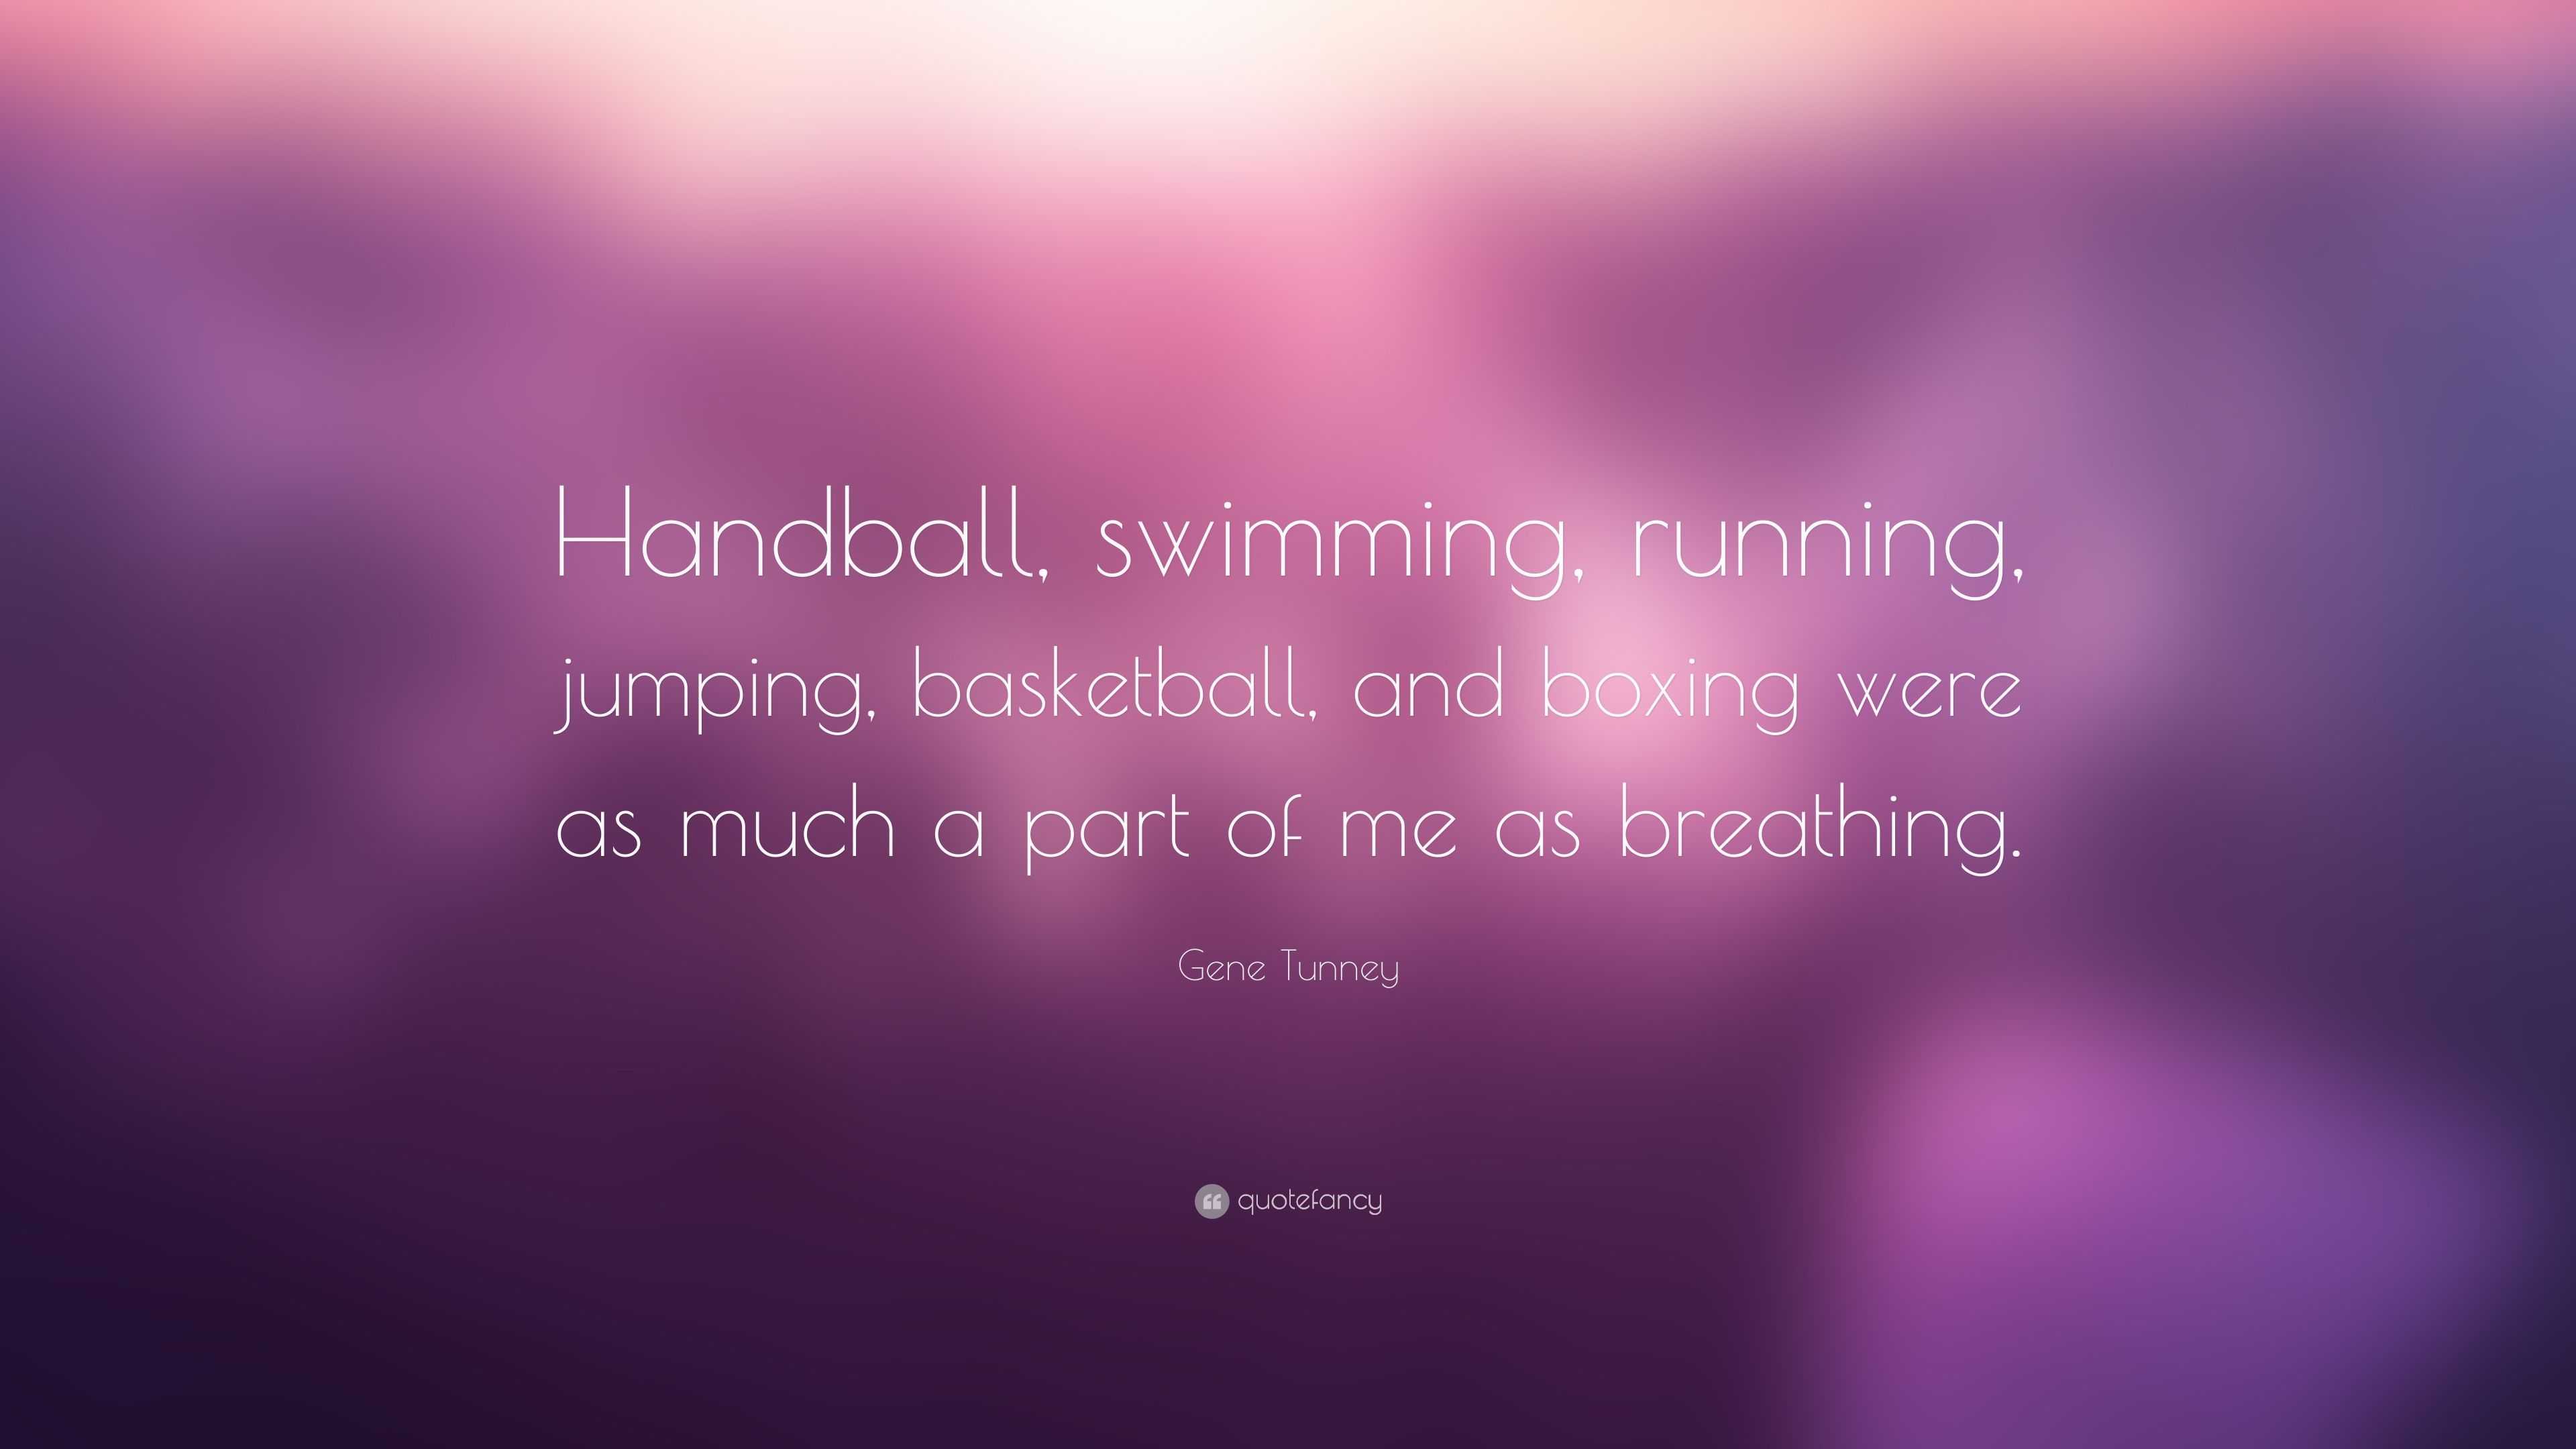 Gene Tunney Quote: “Handball, swimming, running, jumping, basketball ...